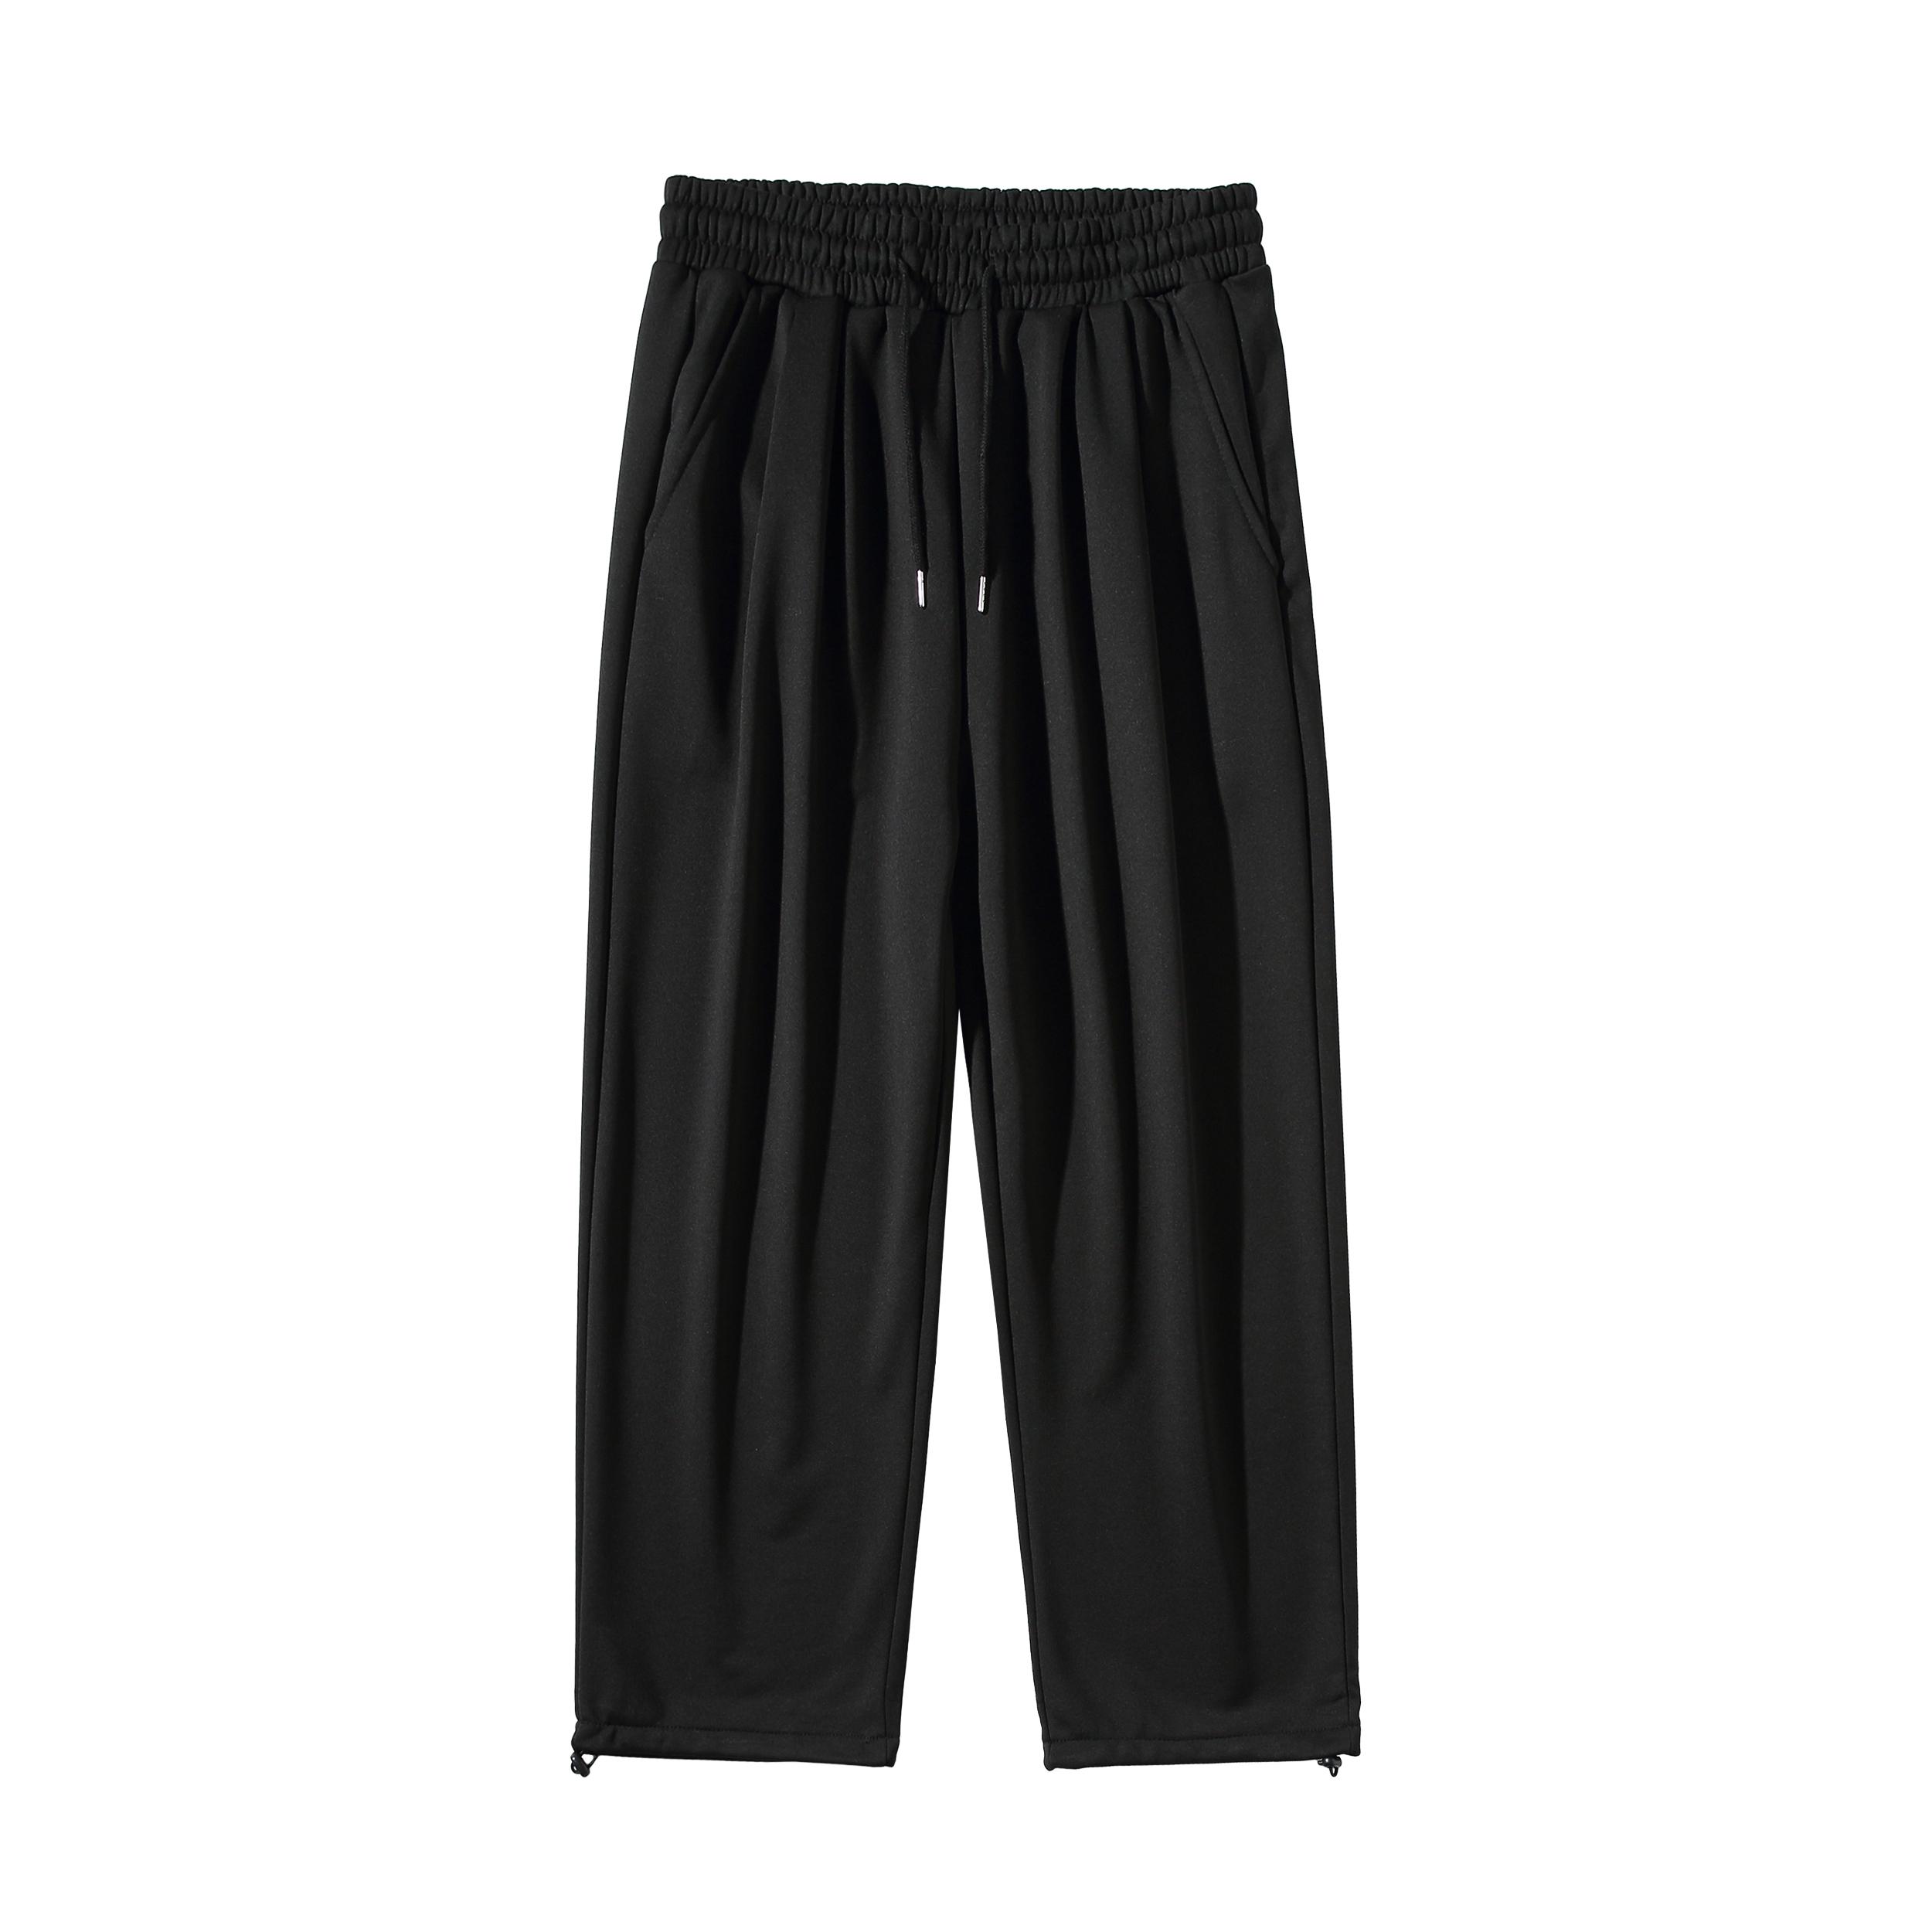 Изображение товара: Брюки мужские в стиле Харадзюку, повседневные деловые штаны, тонкие свободные брюки-карандаш с эластичным поясом, в японском стиле, лето 2022